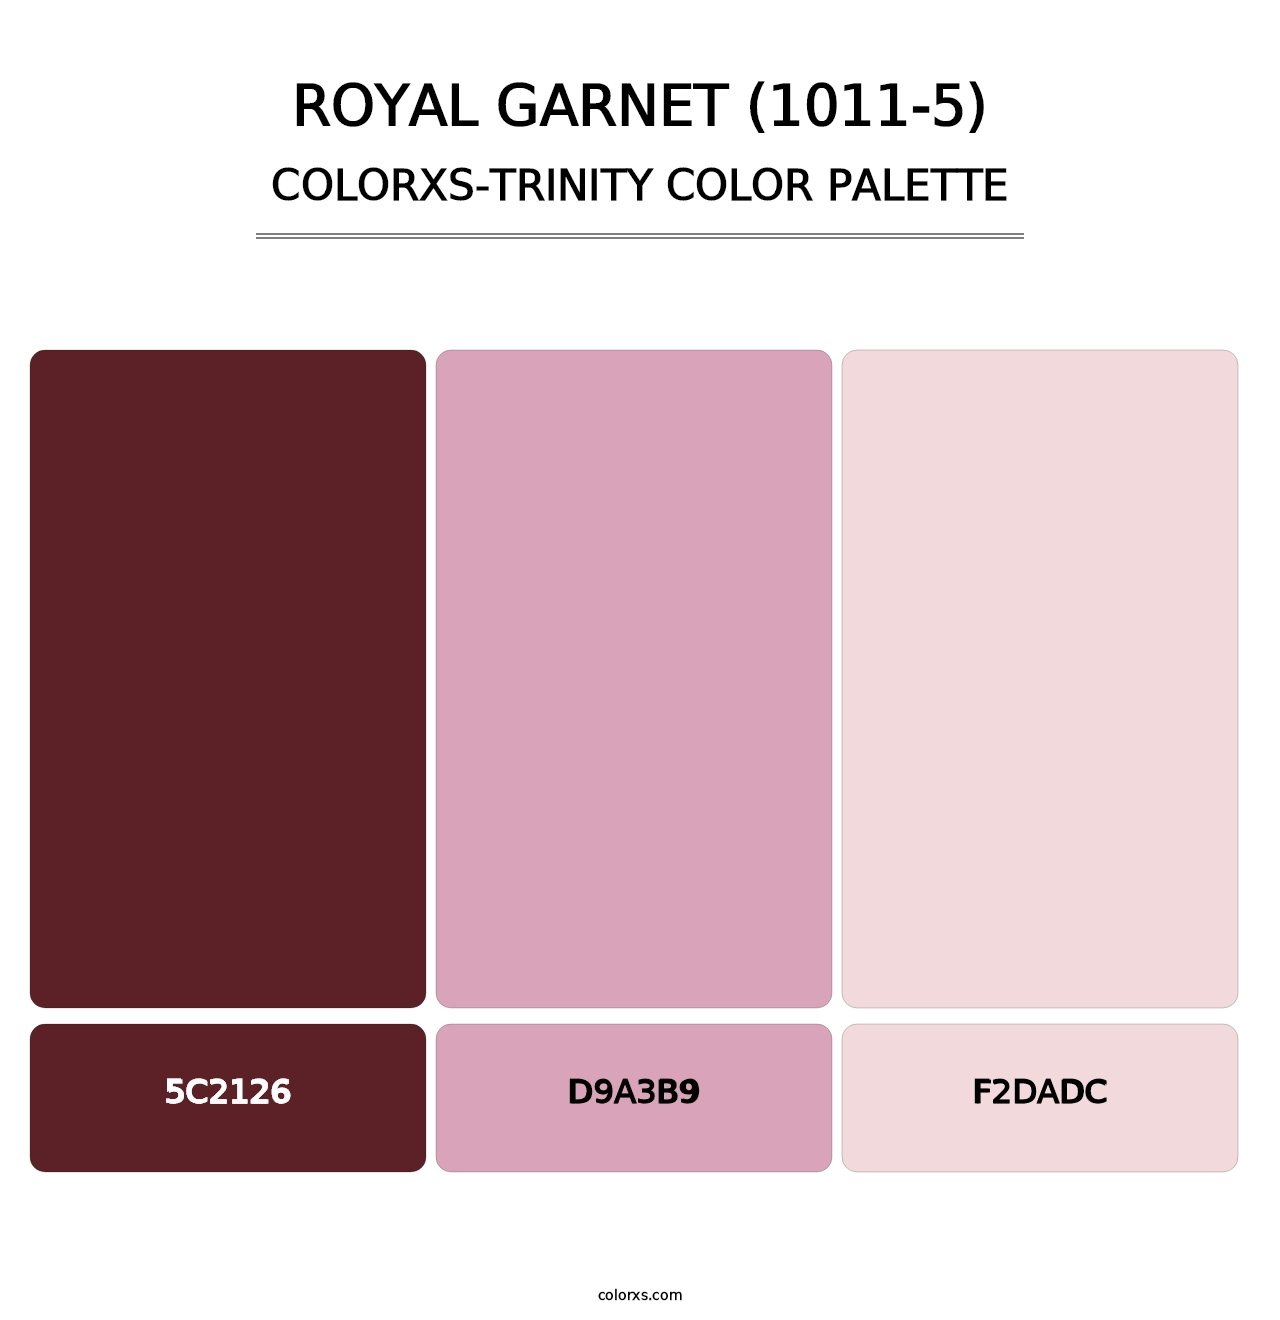 Royal Garnet (1011-5) - Colorxs Trinity Palette